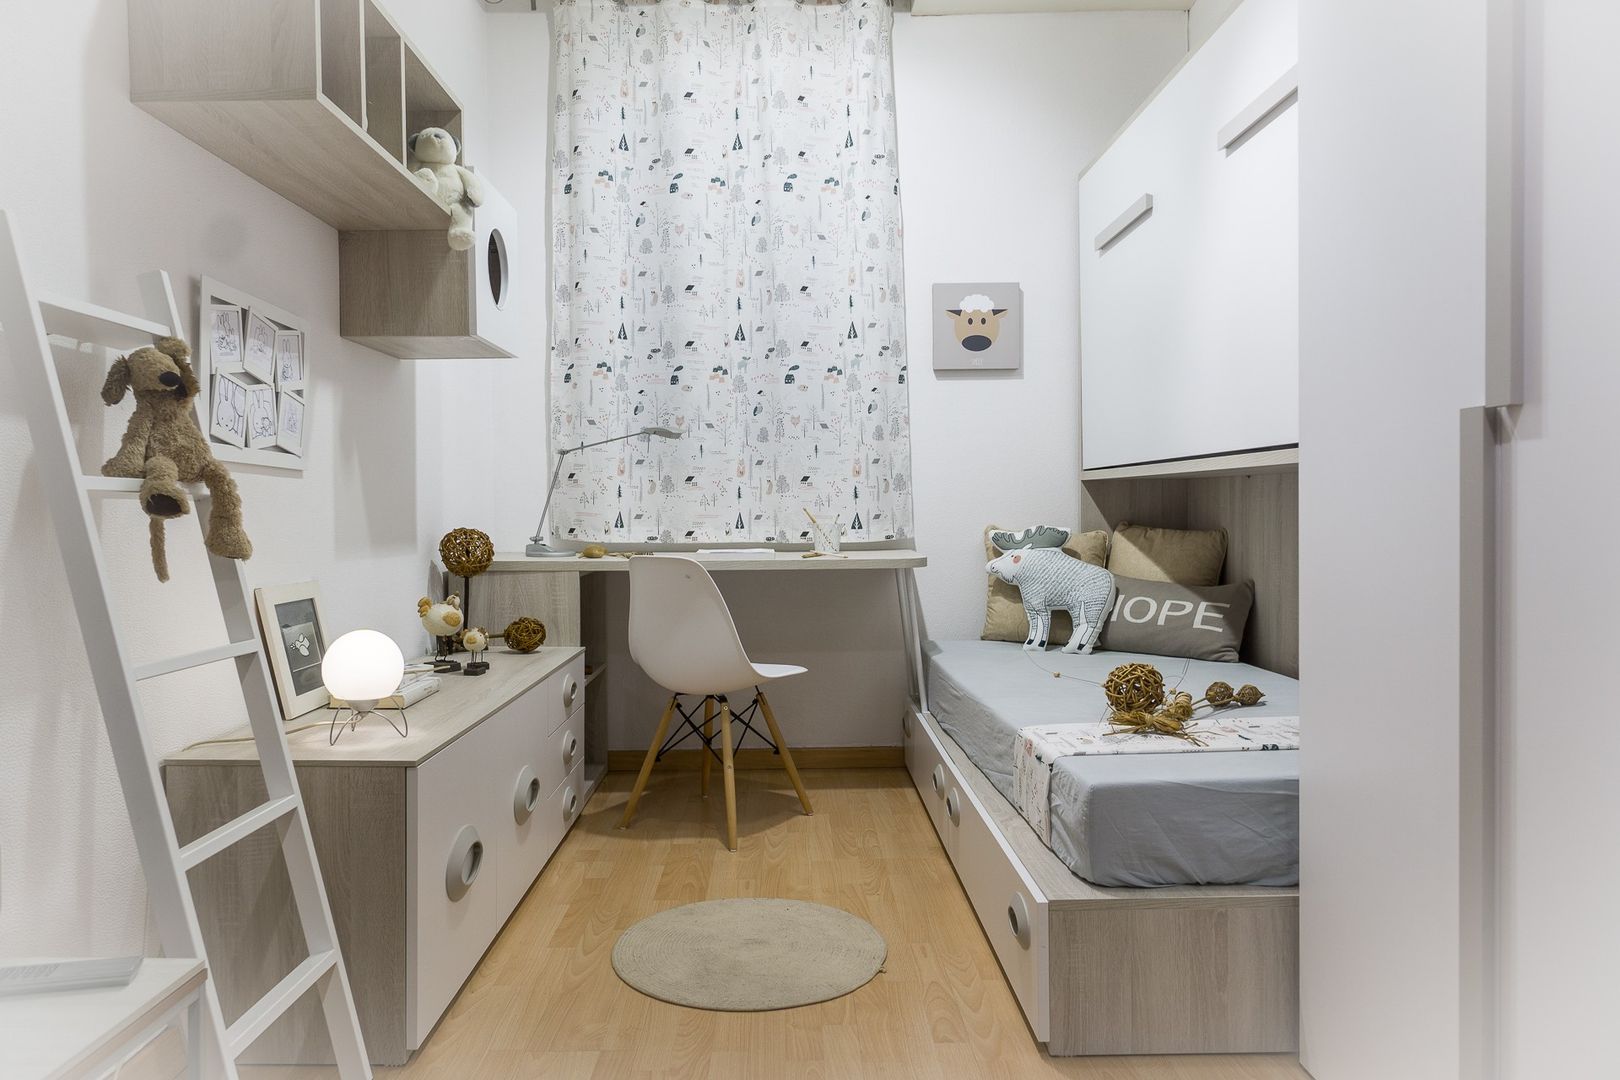 Vista general dormitorio juvenil de estilo nordico con semi litera abatible MOBLES TATAT Dormitorios infantiles de estilo moderno litera plegable,escritorio,dormitorio juvenil,armarios,almacenamiento bajo la cama